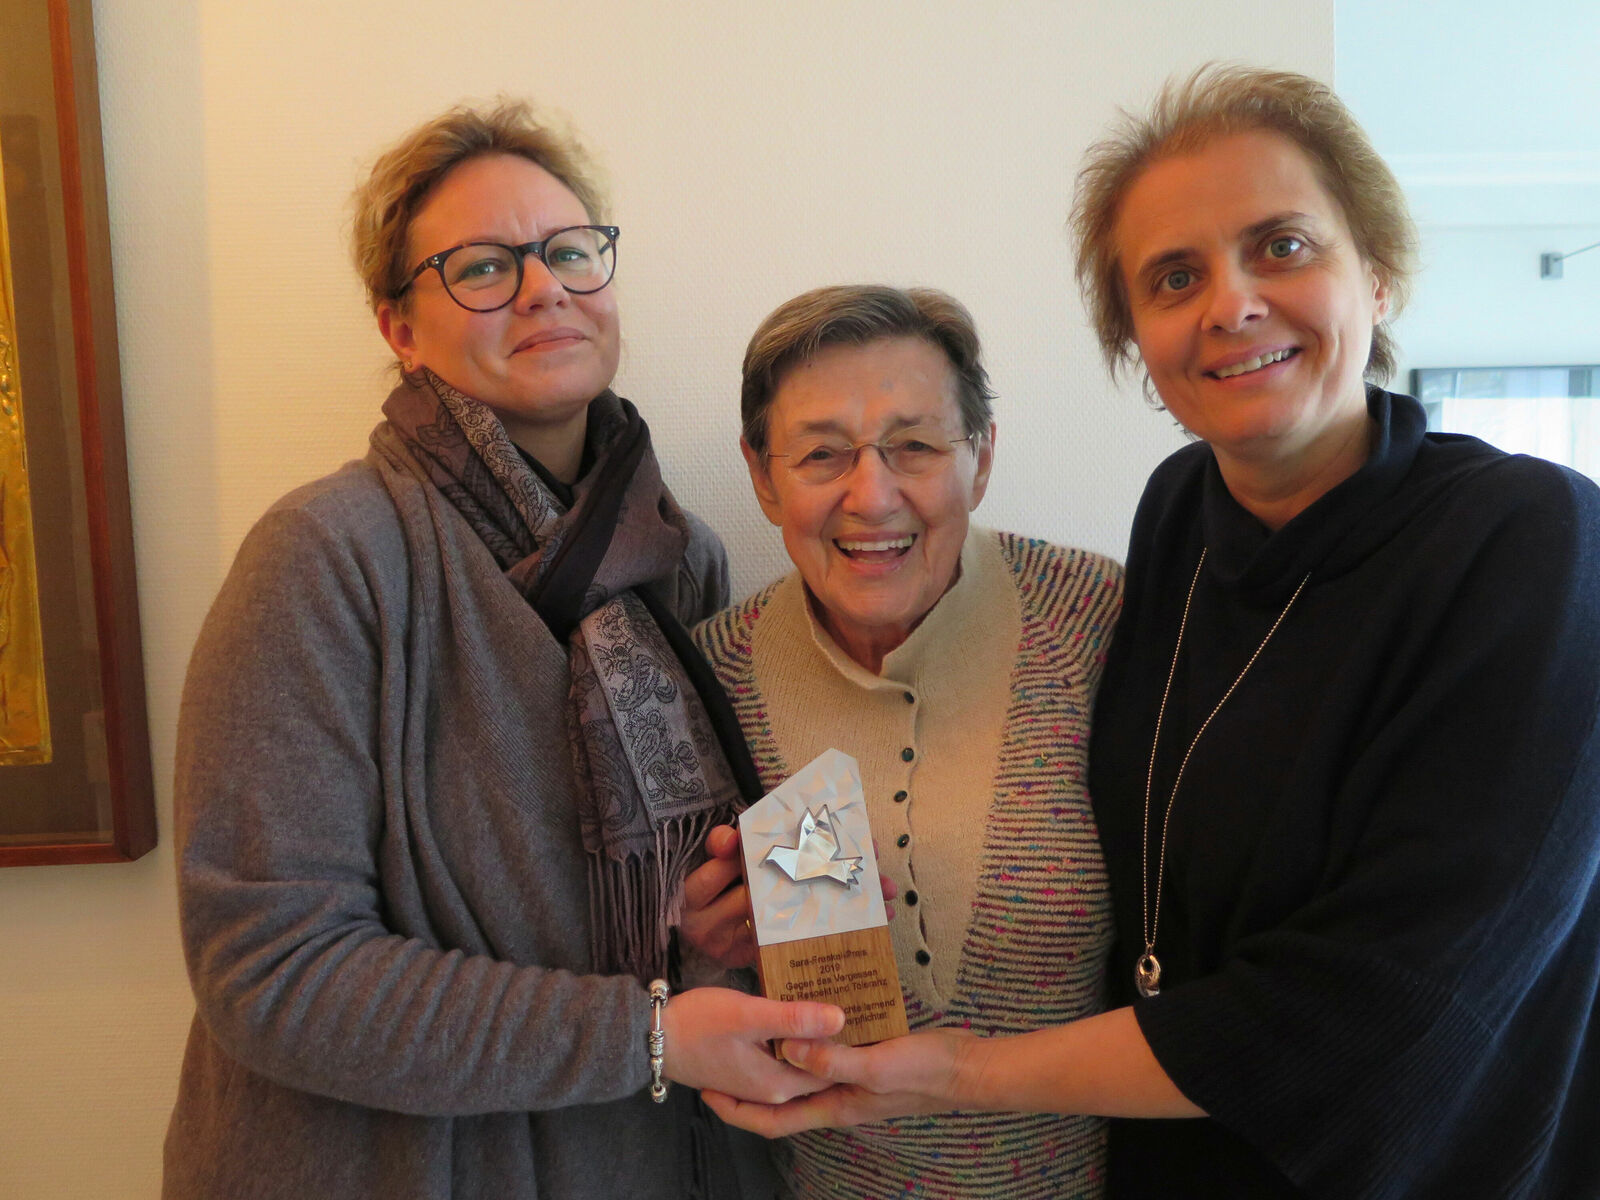 Sara-Frenkel-Preis bei Namenspatronin in Antwerpen angekommen